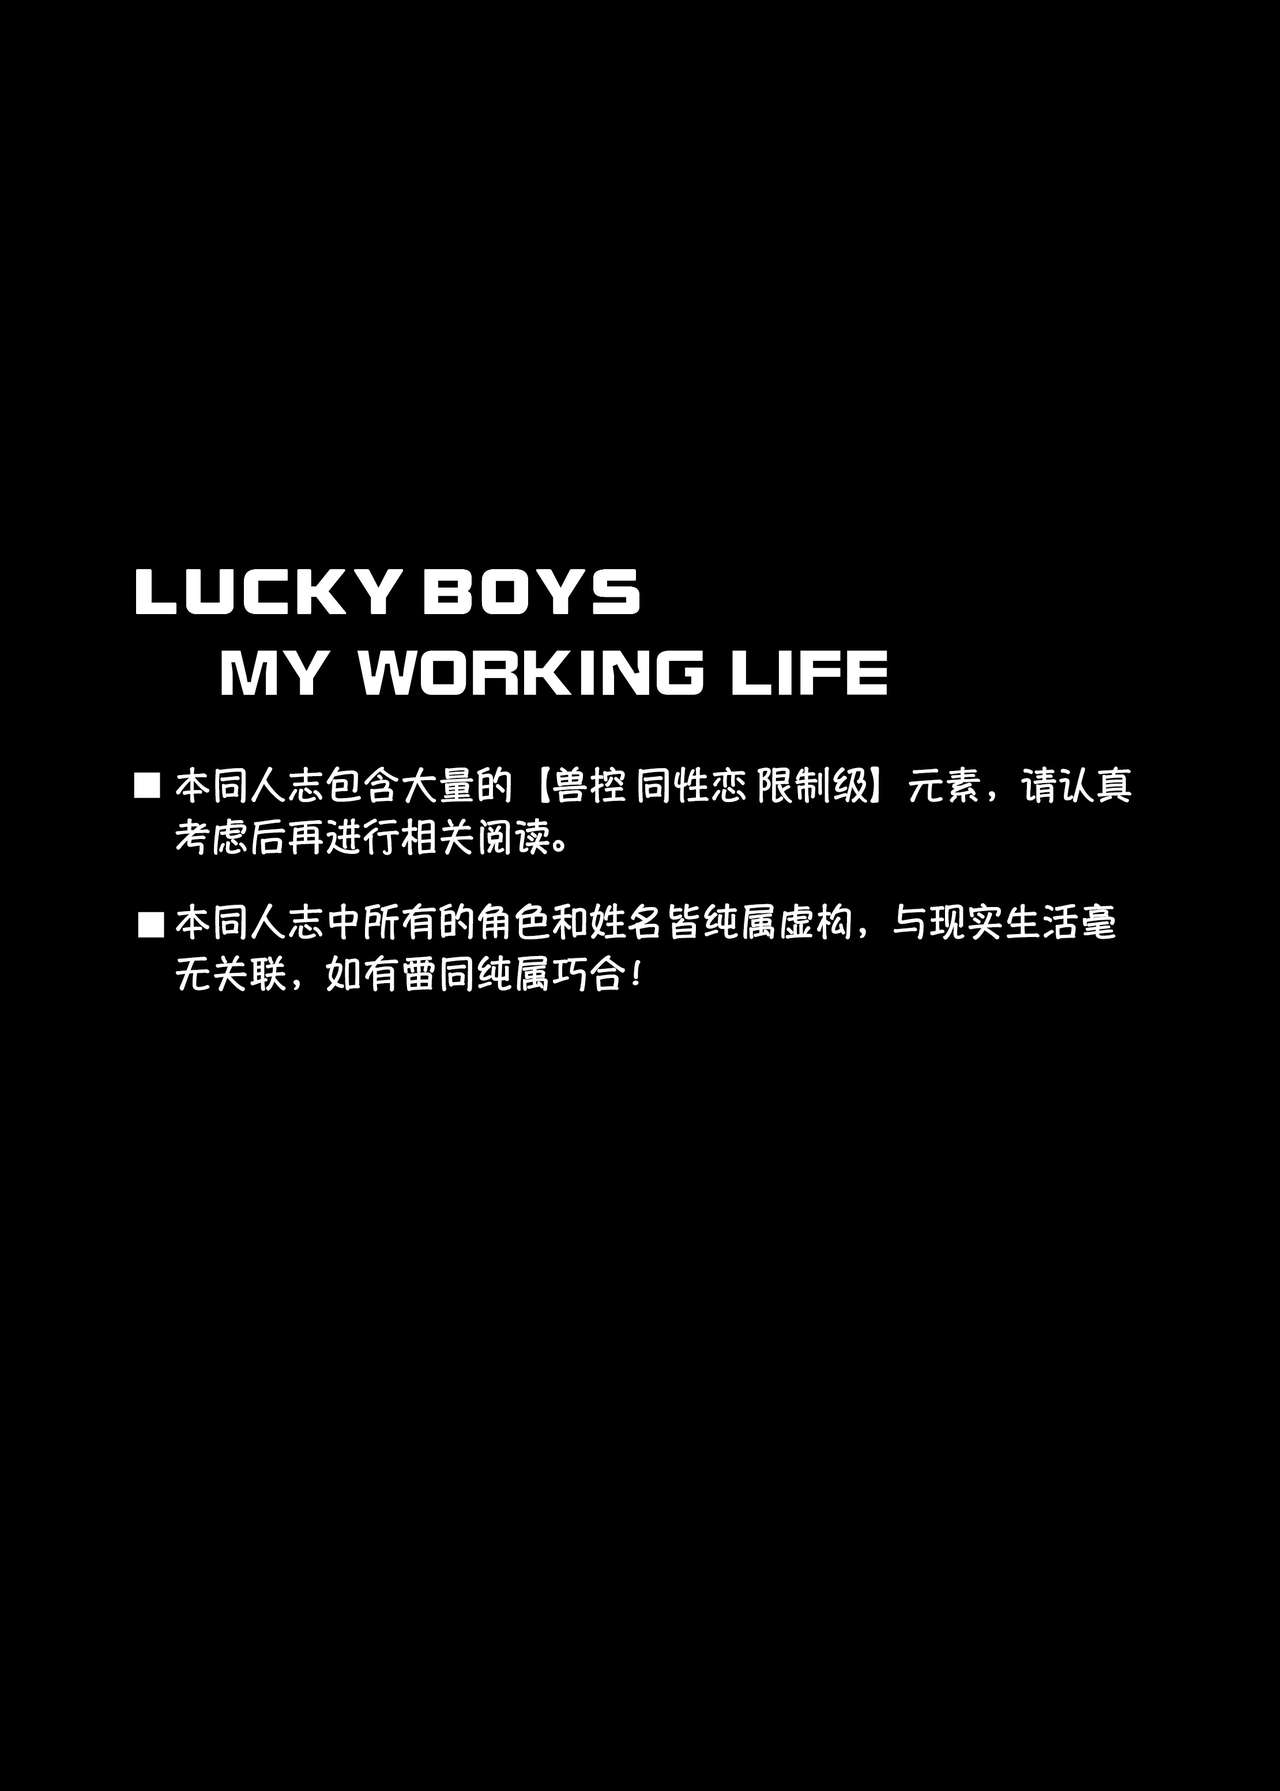 [KUMAK.COM (KUMAK)] Lucky Boys - My working life - [Digital] [Chinese] 